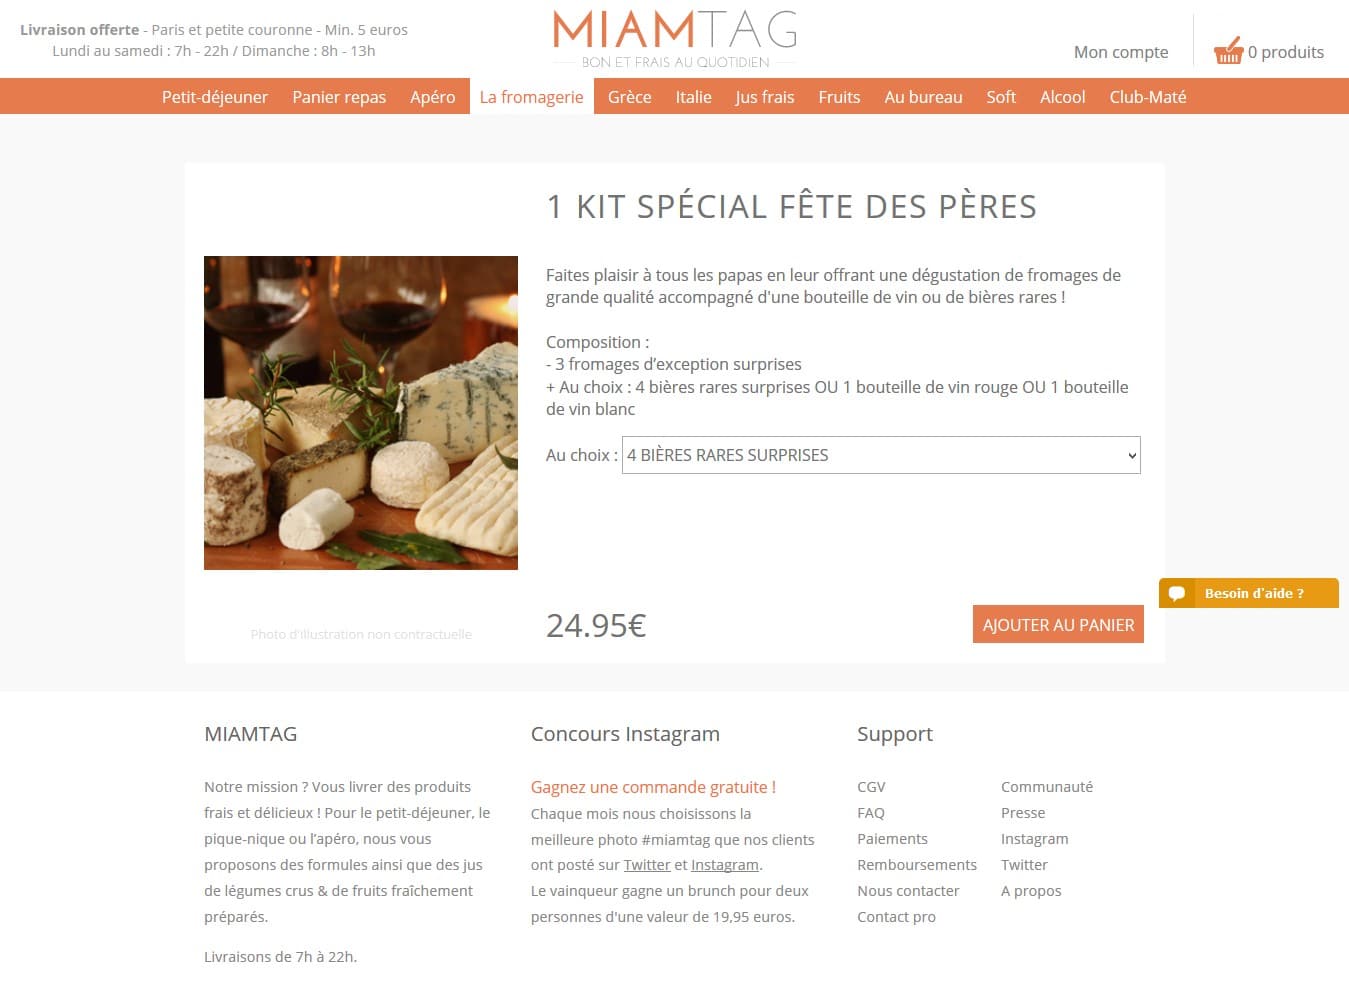 kit special Fete des Peres I Miamtag _ livraison de produits frais sur Paris et petite couronne